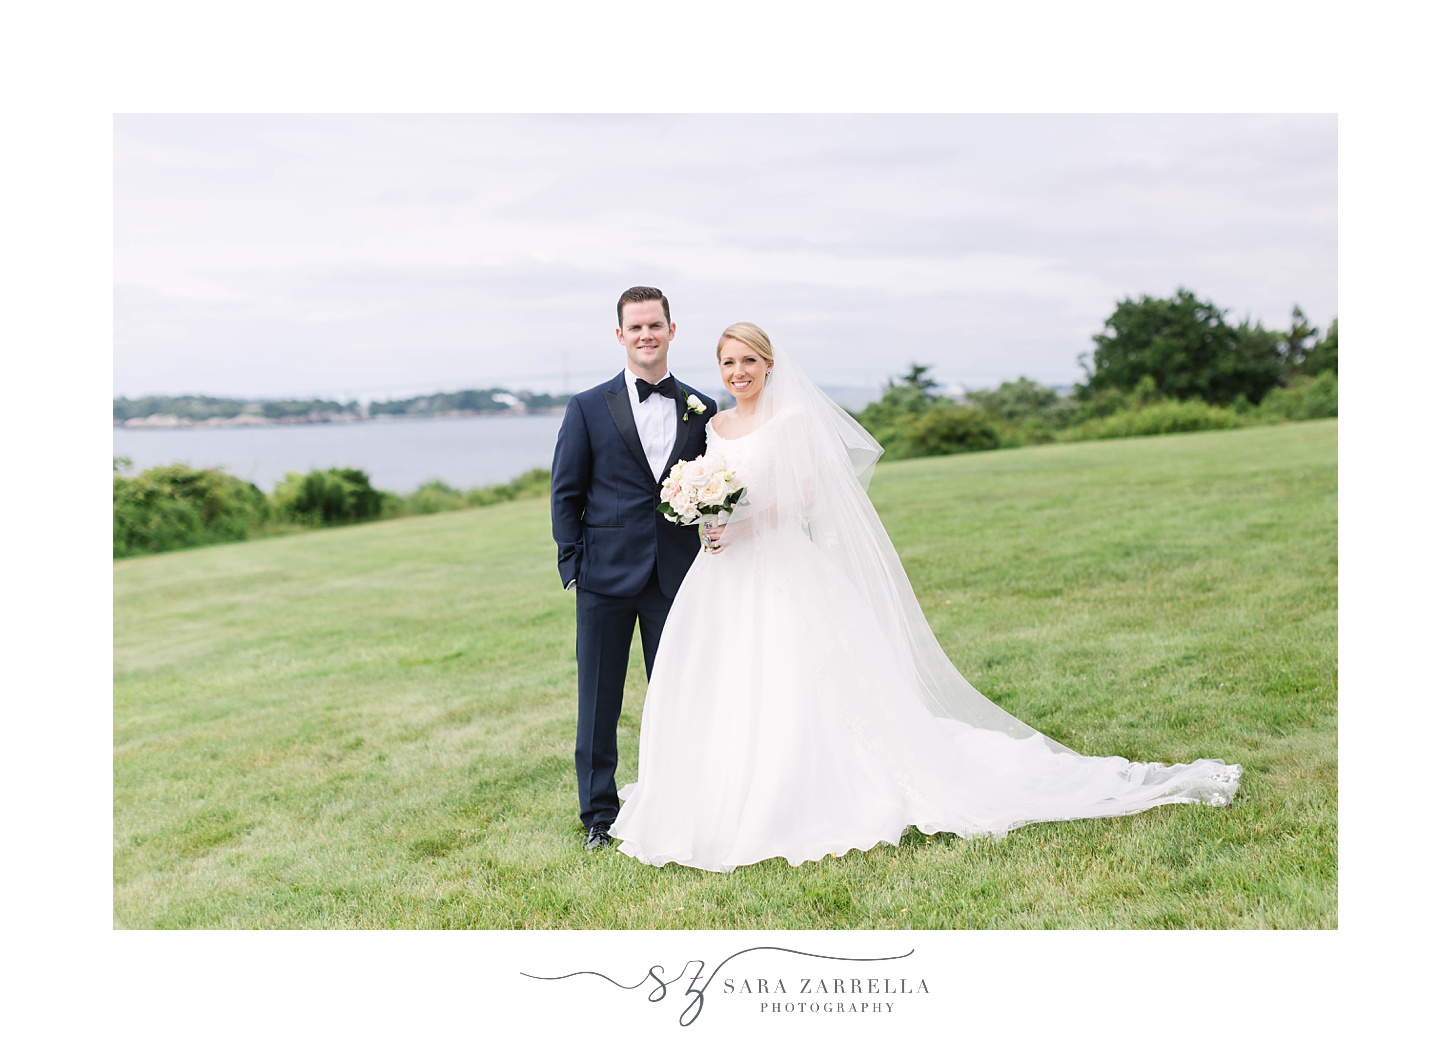 newlyweds pose along waterfront in Newport RI